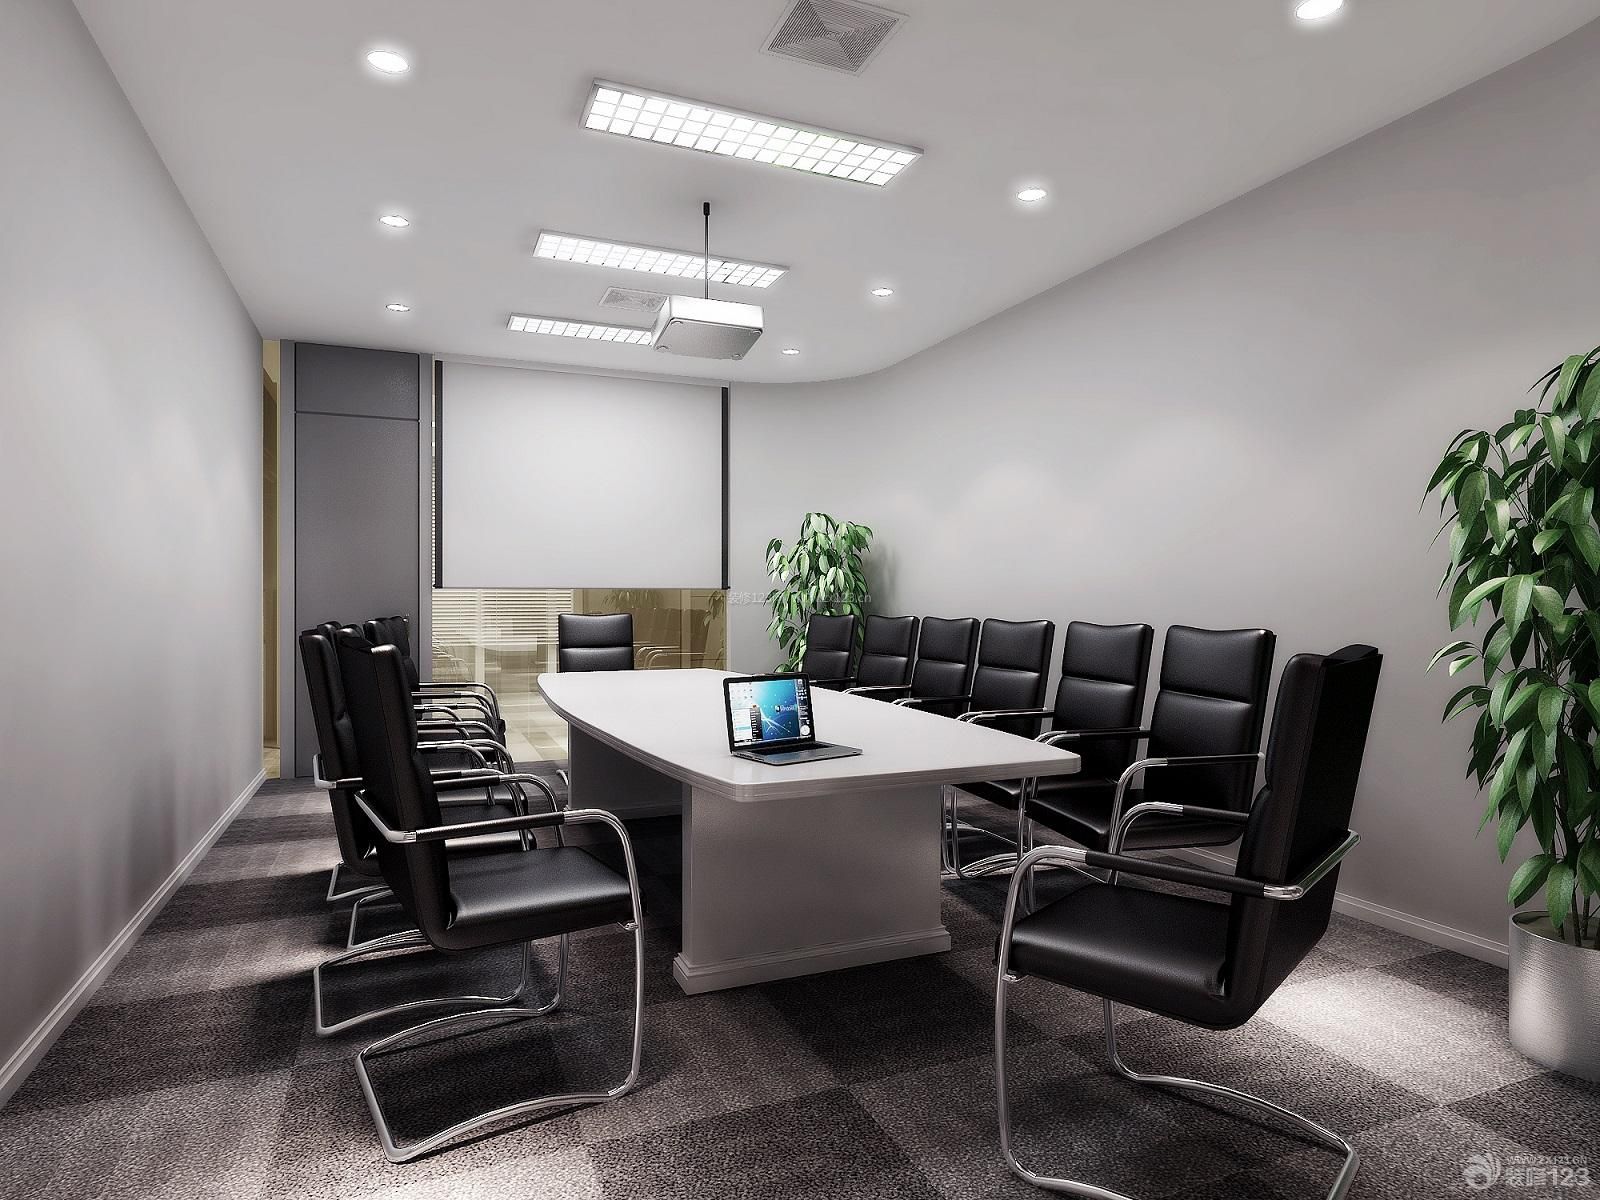 会议室桌椅 会议室设计 磨砂地面 石膏板吊顶 射灯 办公室灯具 白色